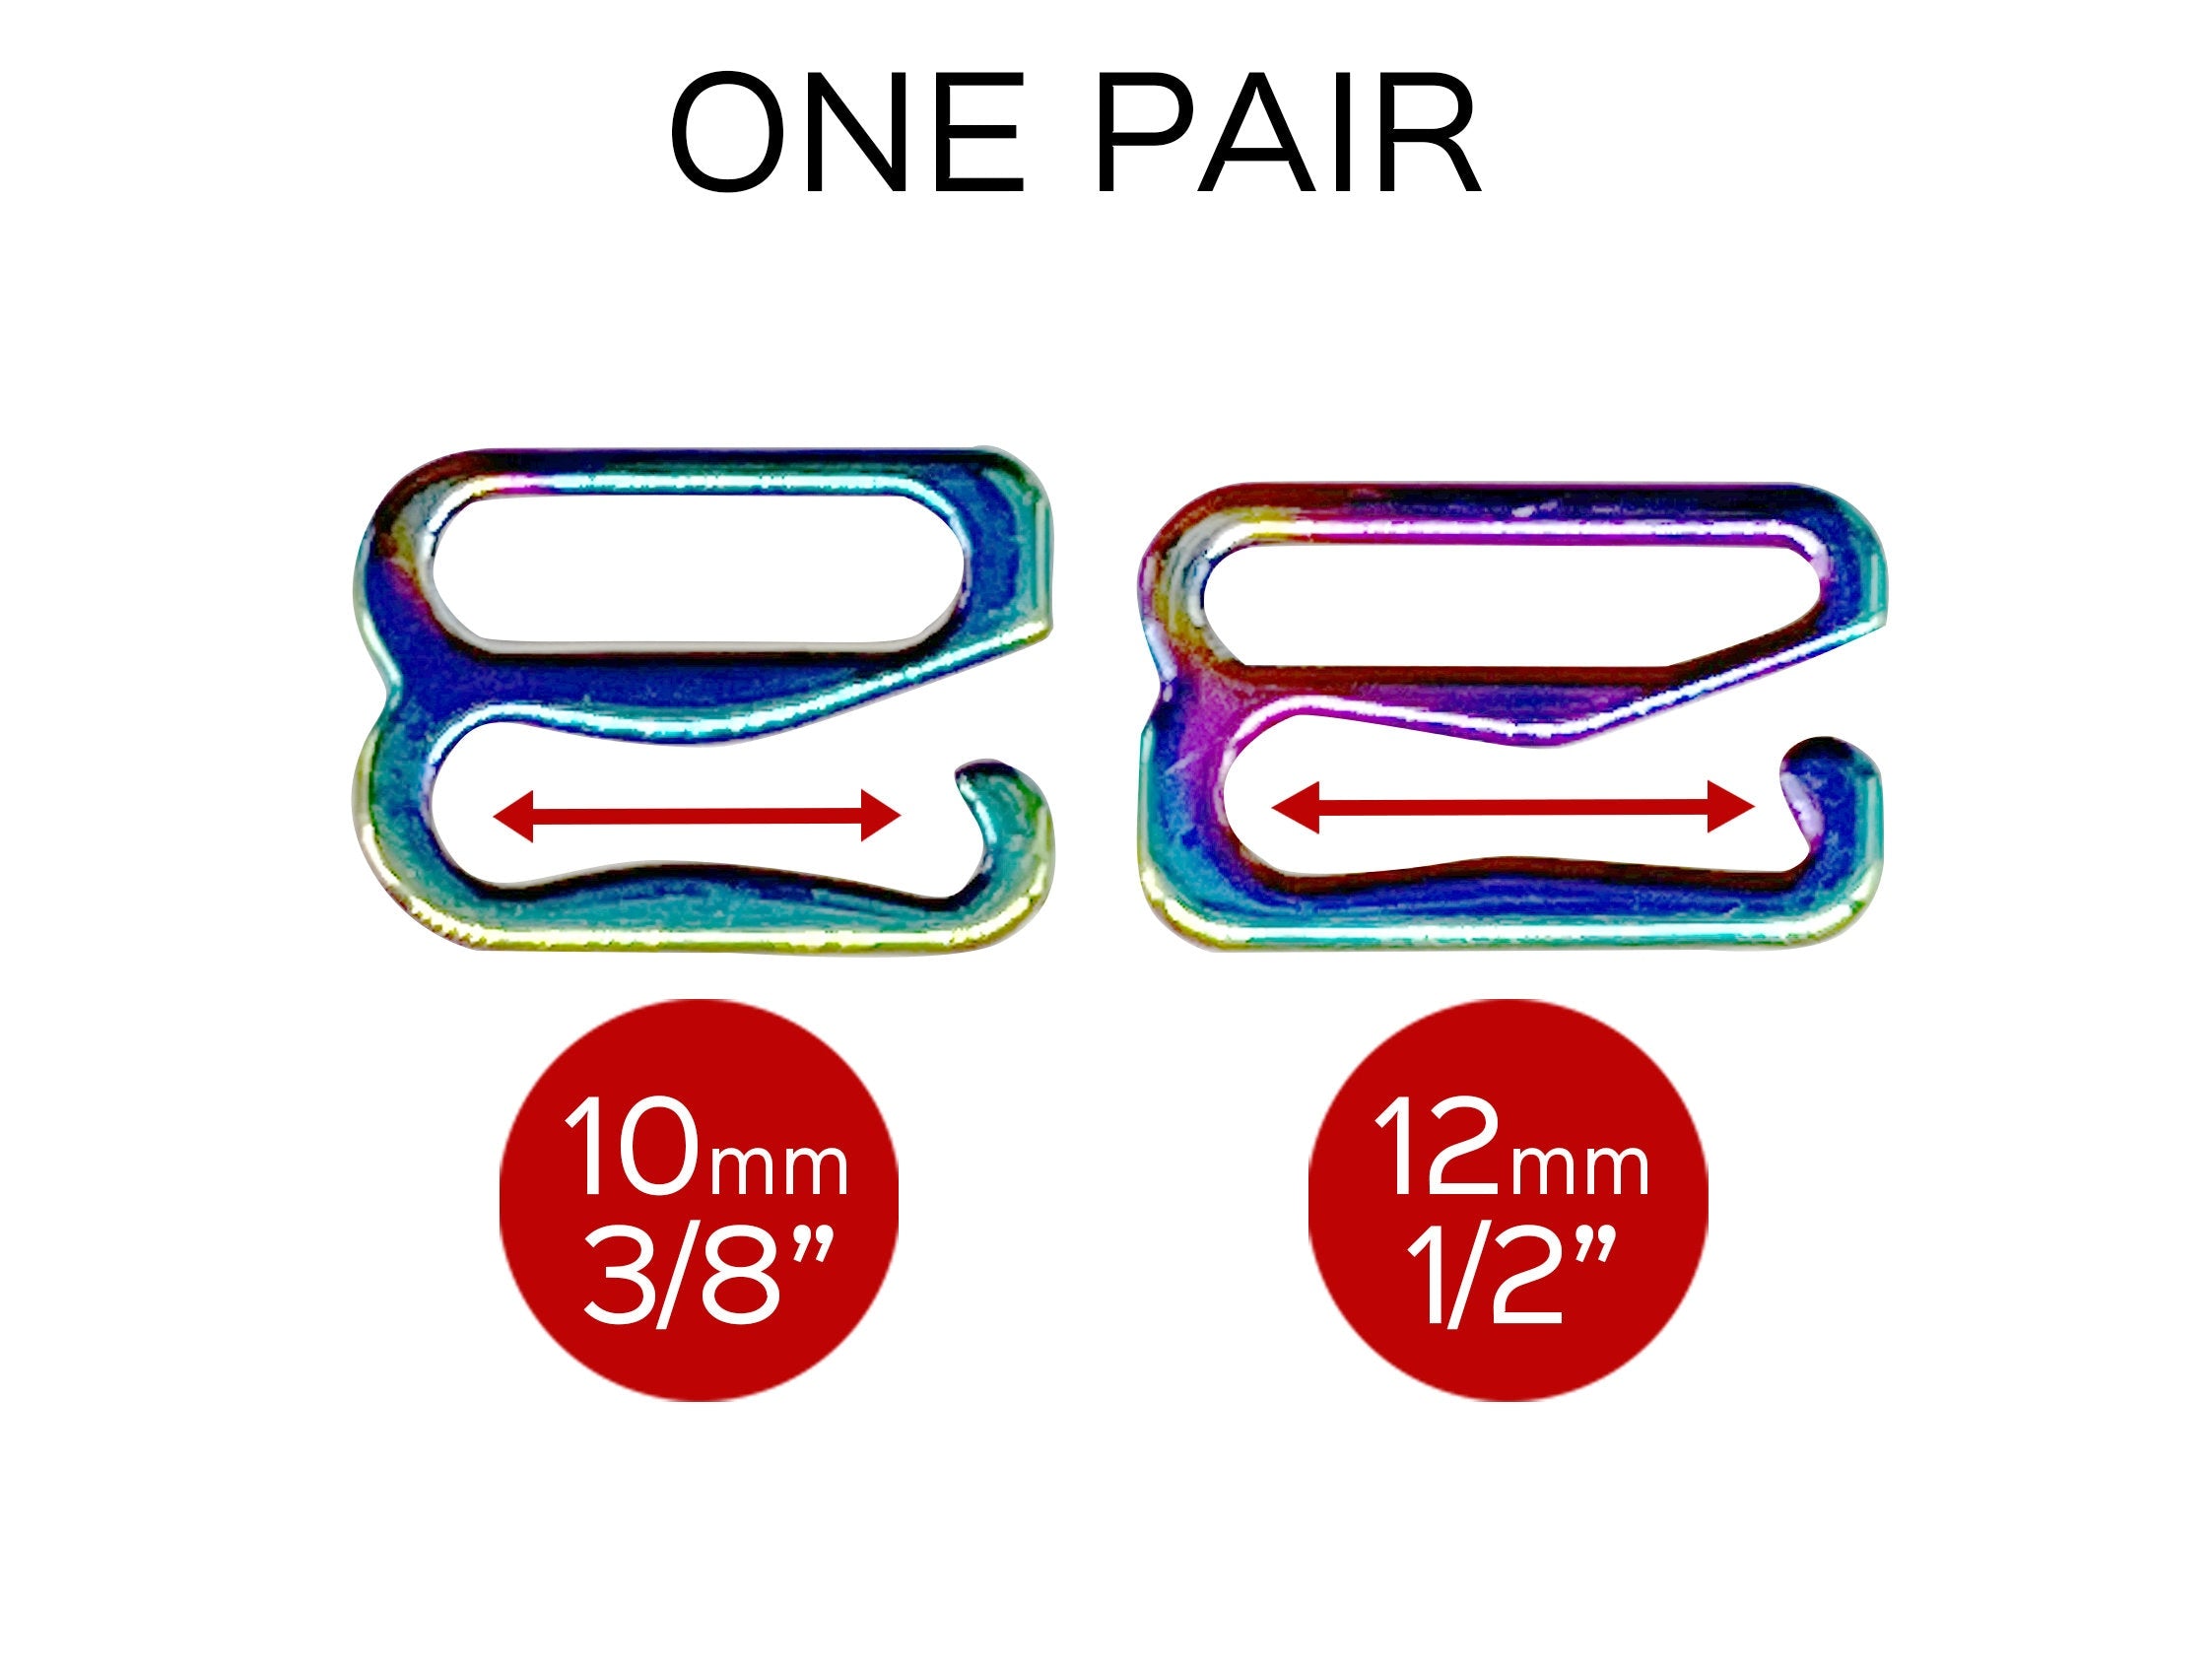 Bra Strap Slider G Hooks in Rainbow for Swimwear or Bra making – 3/8" or 1/2" - Set of 2 G Hooks